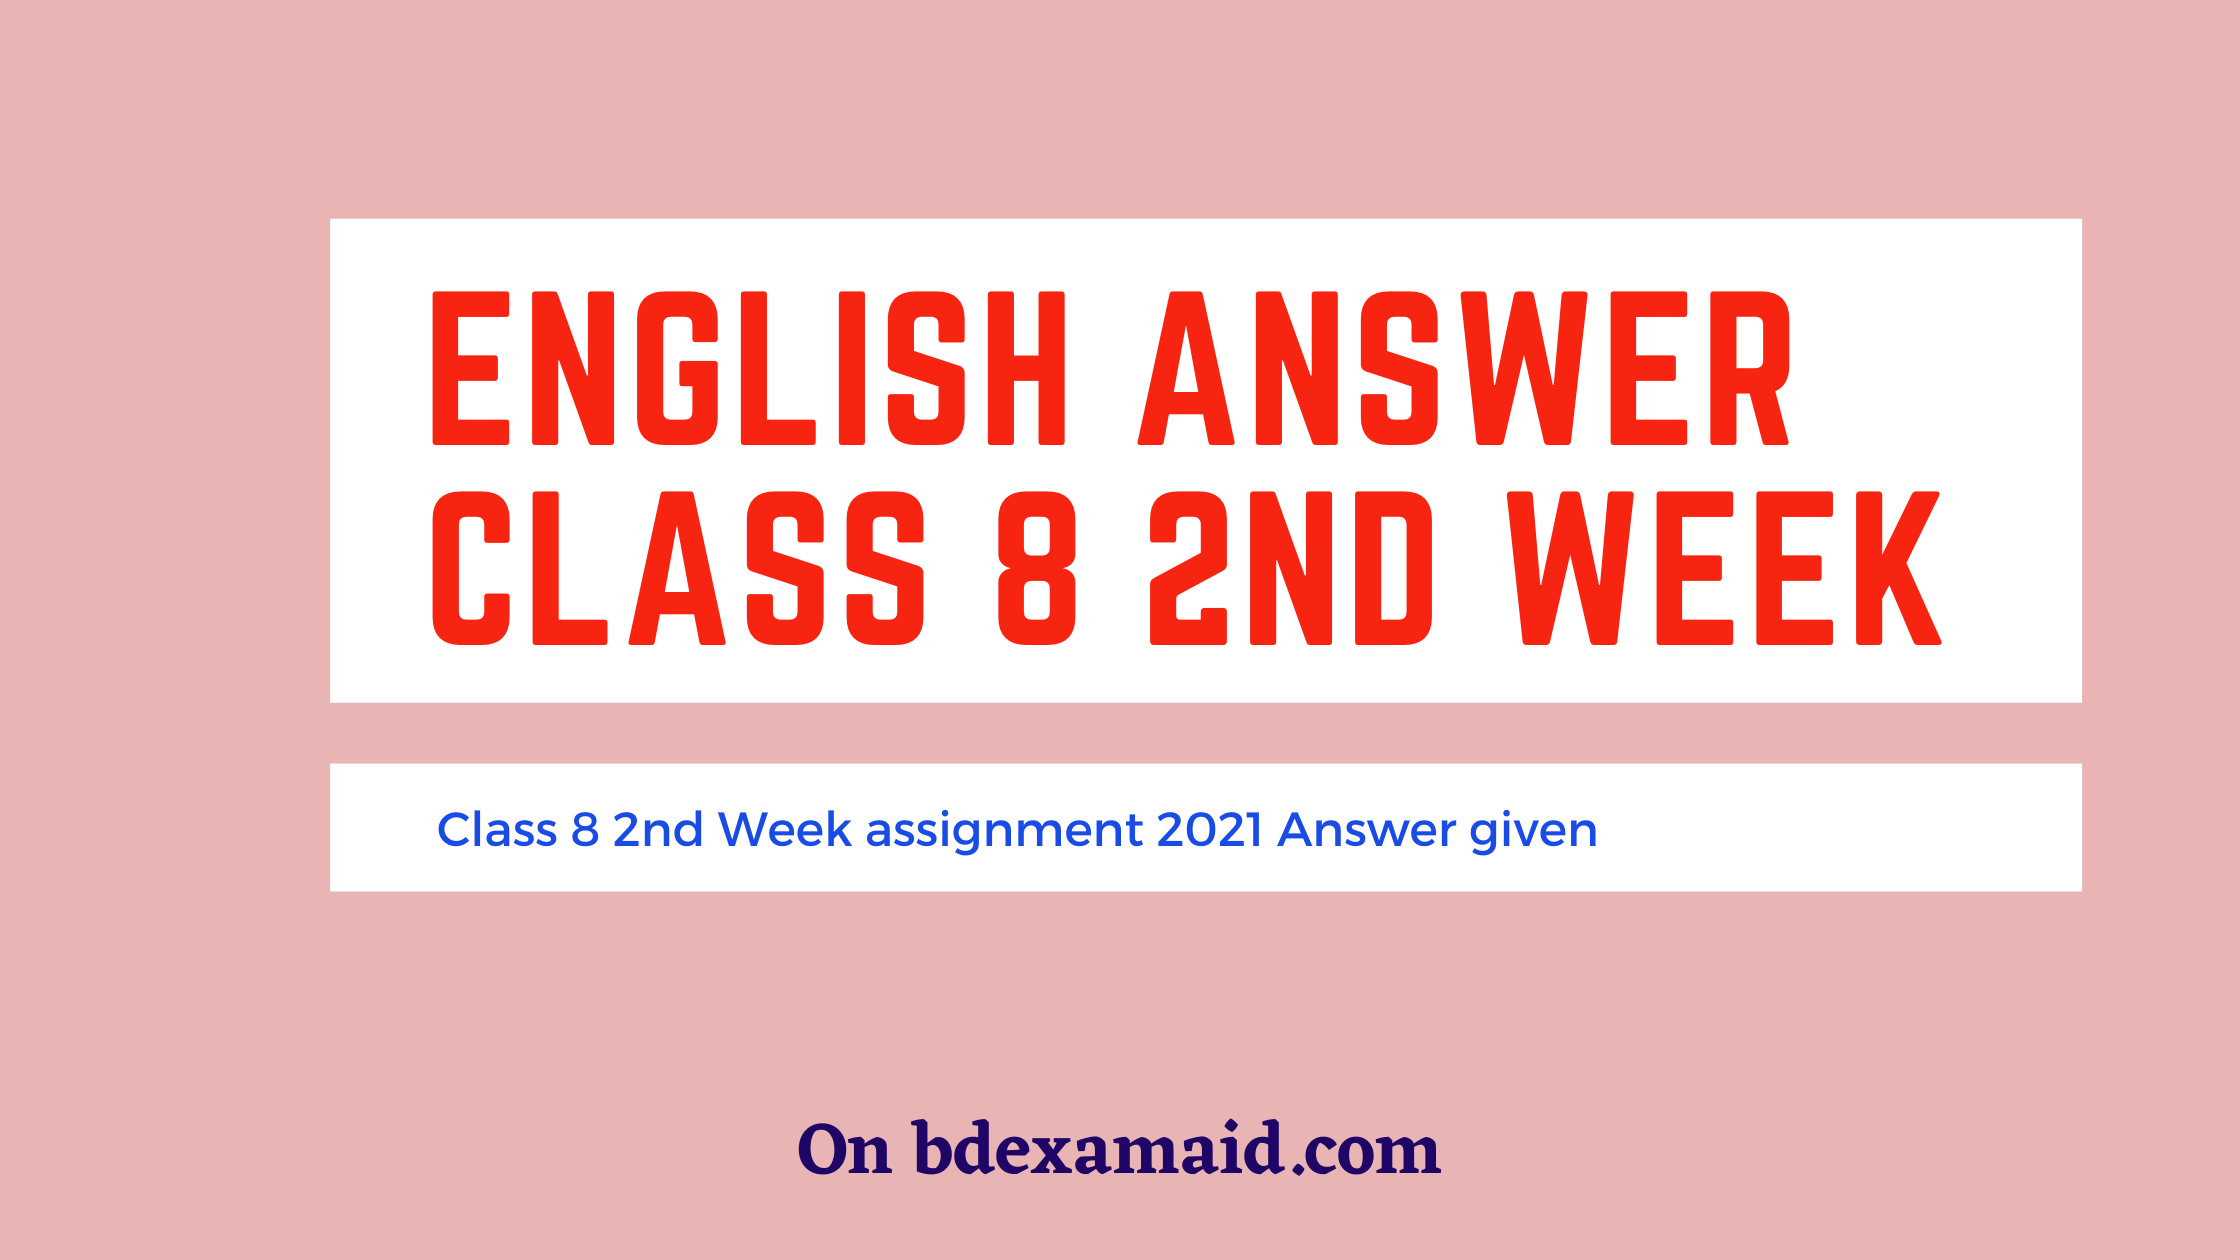 class 8 2nd week English answer